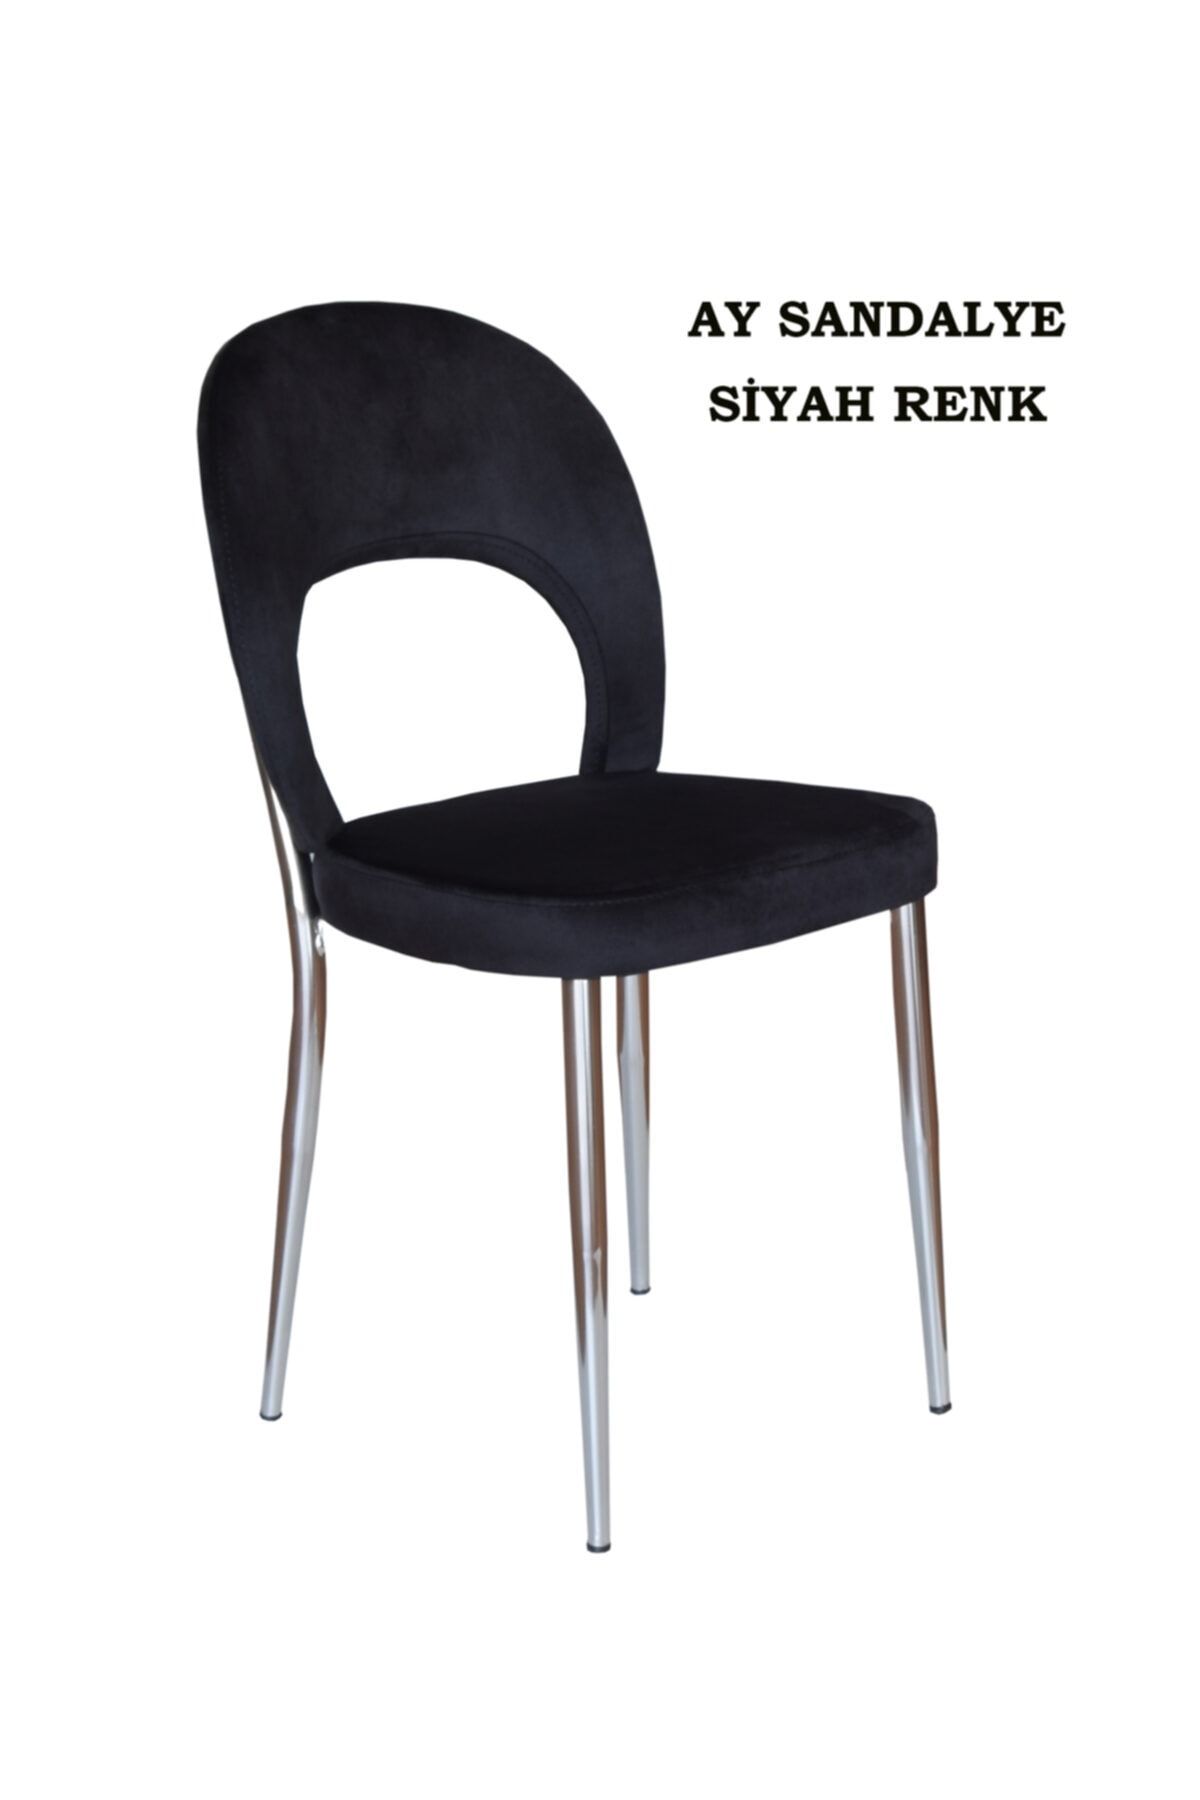 Ankhira Ay Sandalye, Mutfak Sandalyesi, Silinebilir Siyah Renk Kumaş, Krom Ayaklı